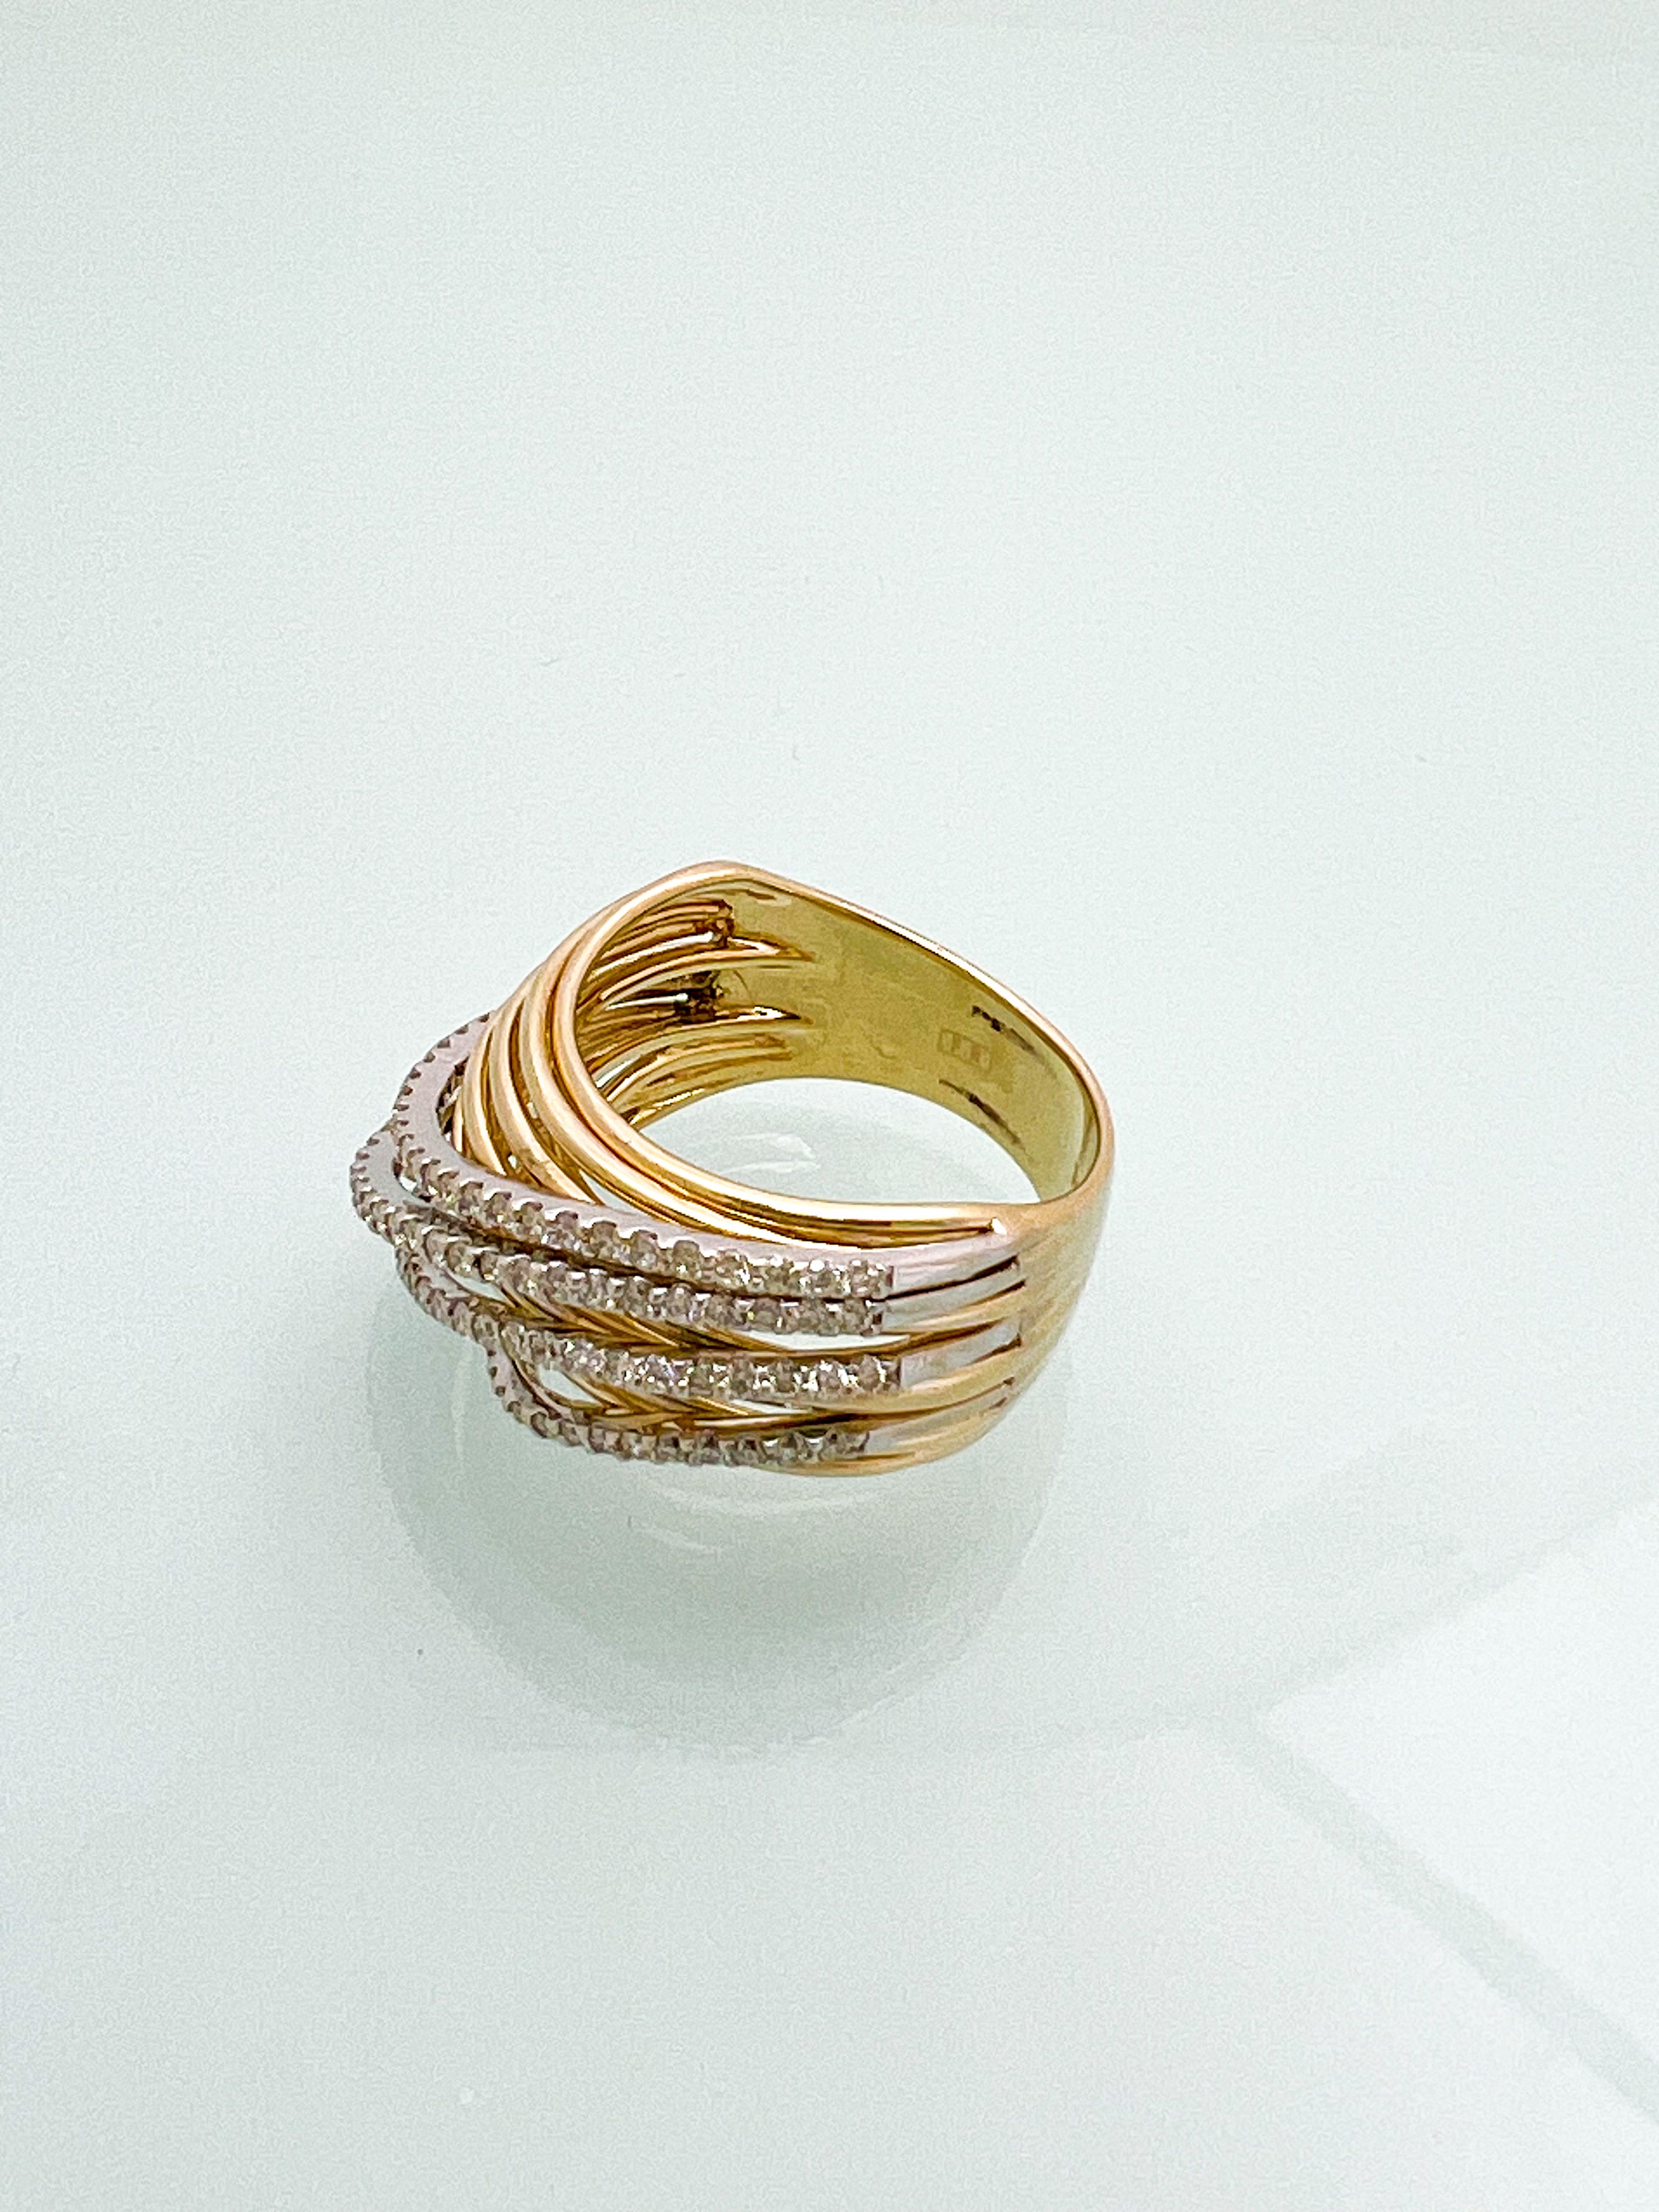 טבעת  חוטי זהב 14 קארט משולבת זהב צהוב ולבן עם שיבוץ יהלומים